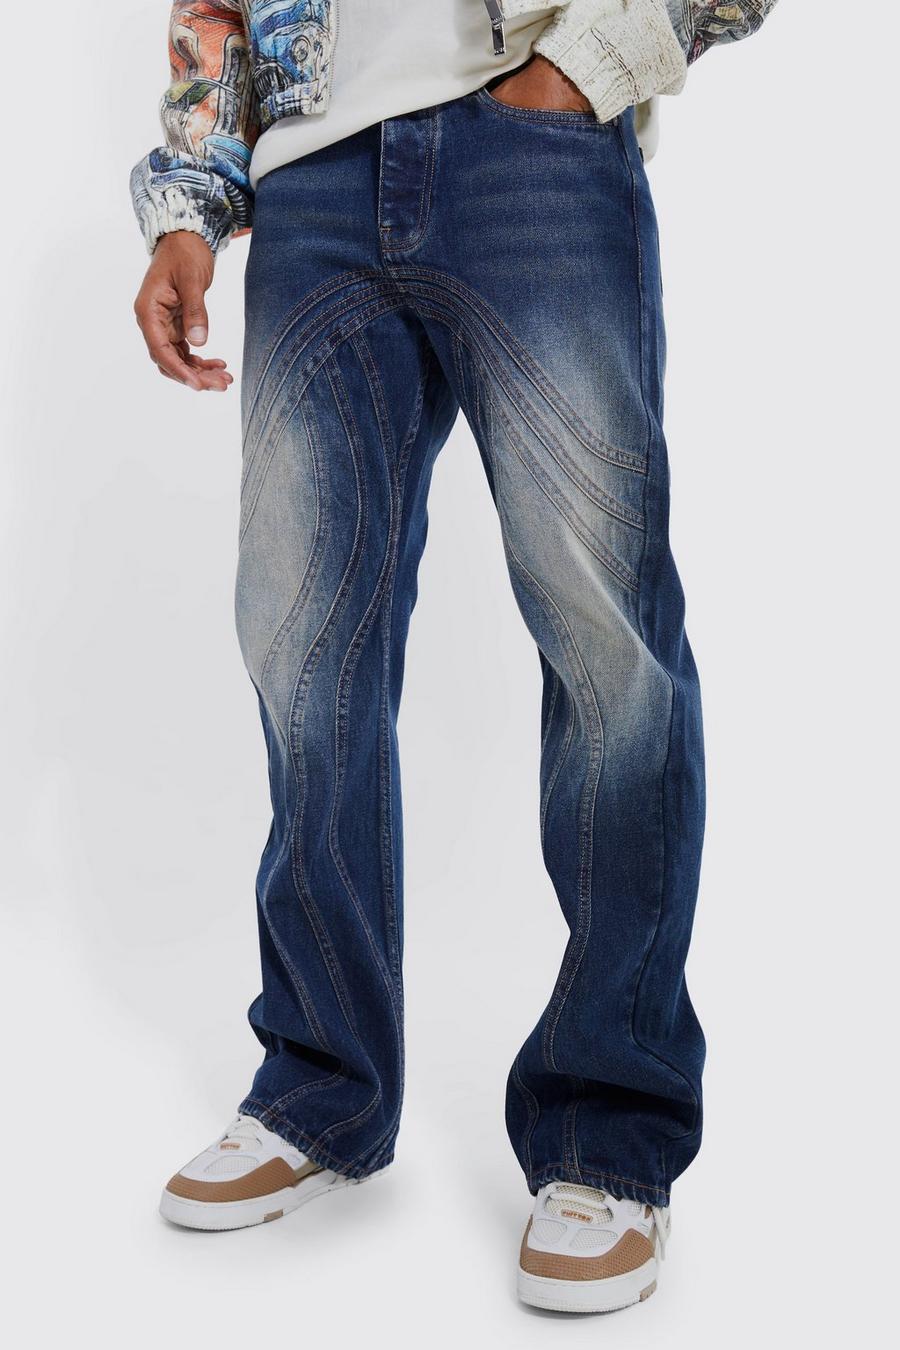 Jeans rilassati in denim rigido a zampa con pannelli colorati, Antique wash